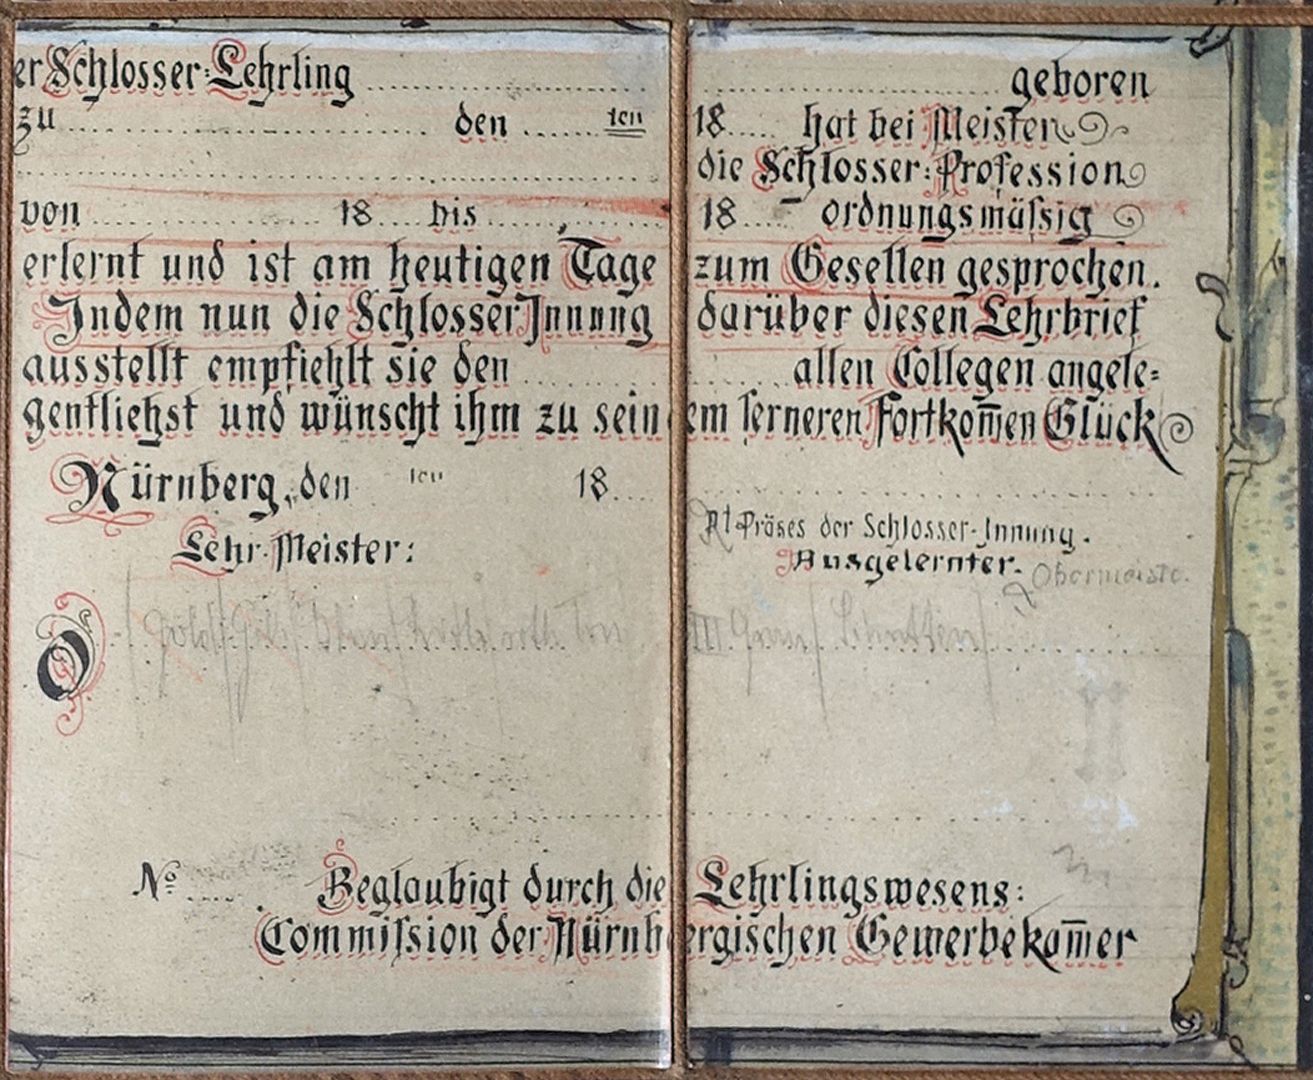 Entwurf für einen Lehrbrief der Schlosser-Innung mittleres Bilddrittel, beide rechten Felder, mit Textefeld für individuelle Eintragung